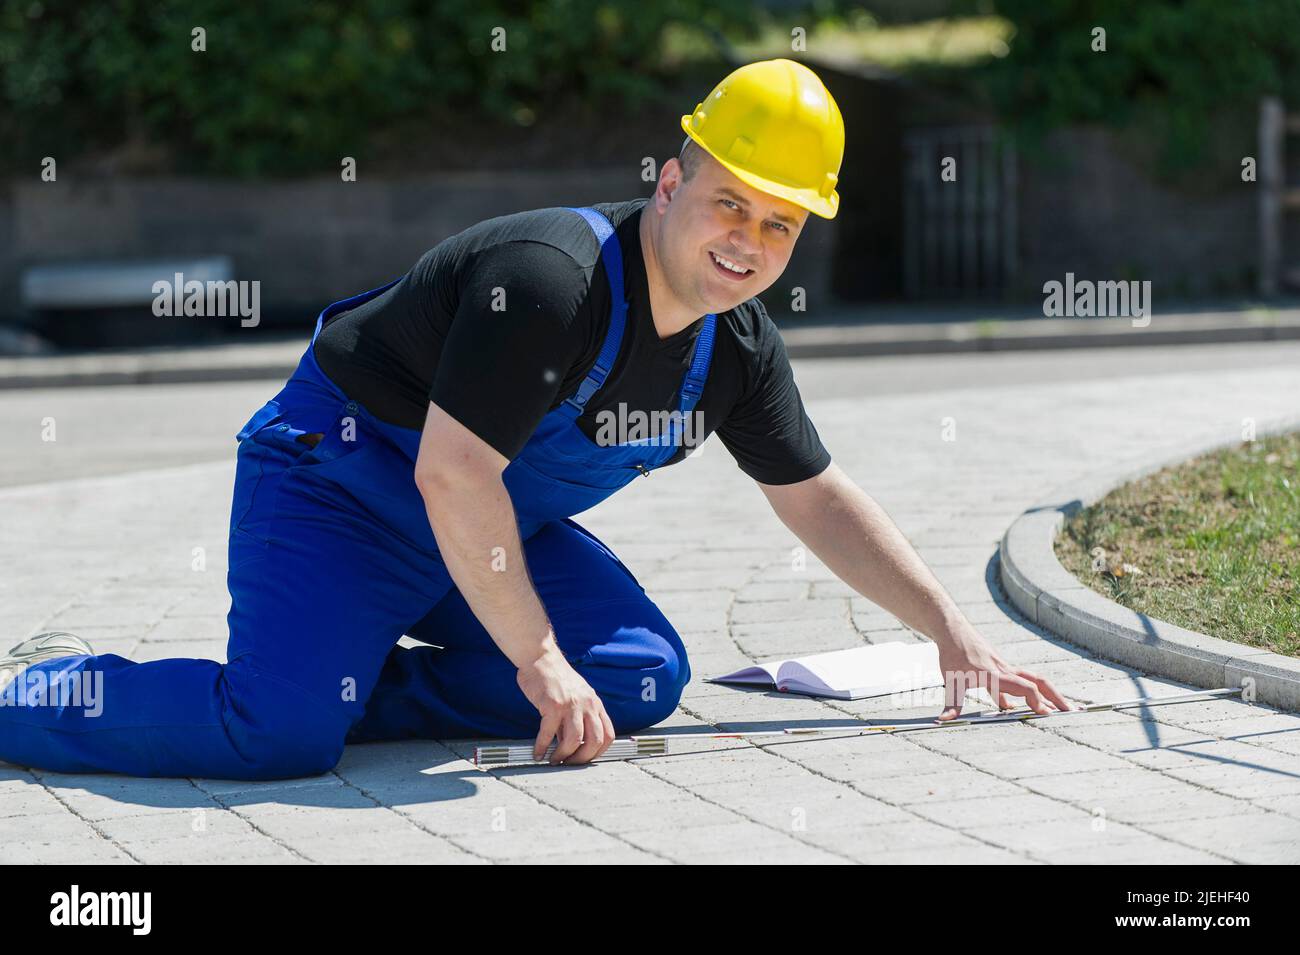 Ein Bauarbeiter mit Zollstock in der hand vermisst einen gepflasterten Weg, gelber Schutzhelm, Bauarbeiter, Beruf, Berufe, Foto de stock